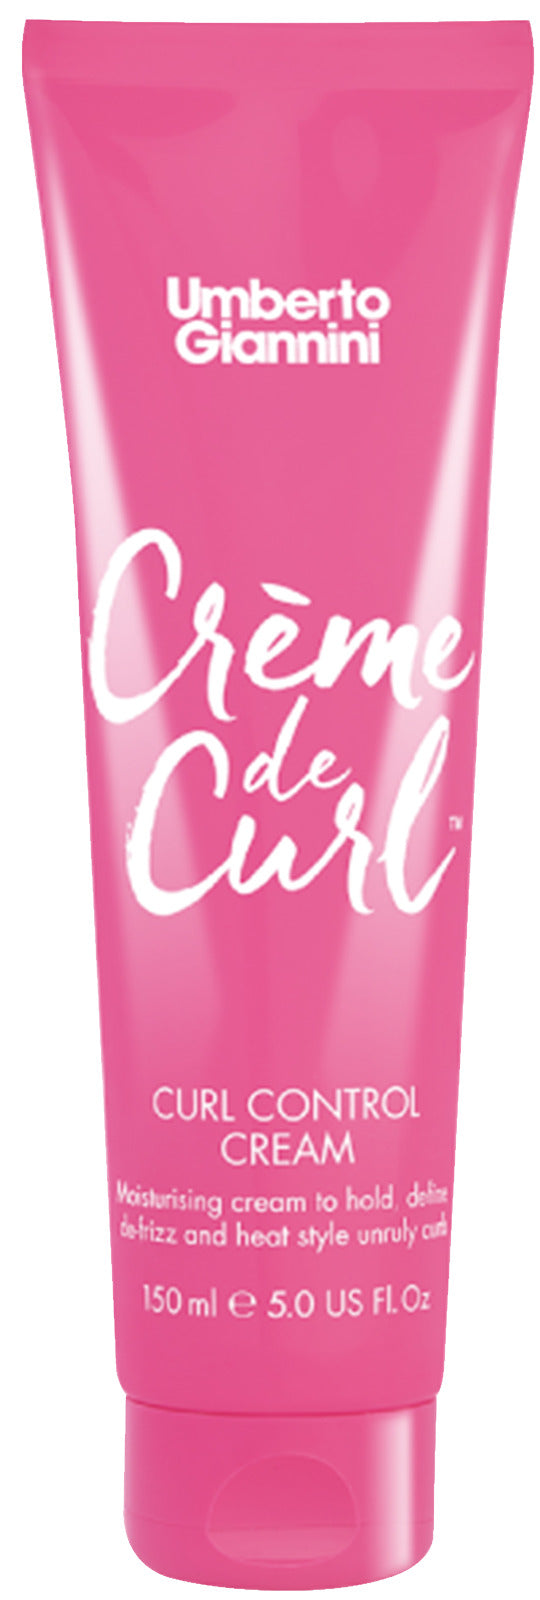 Umberto Giannini: Crème de Curl Control Cream (150ml)